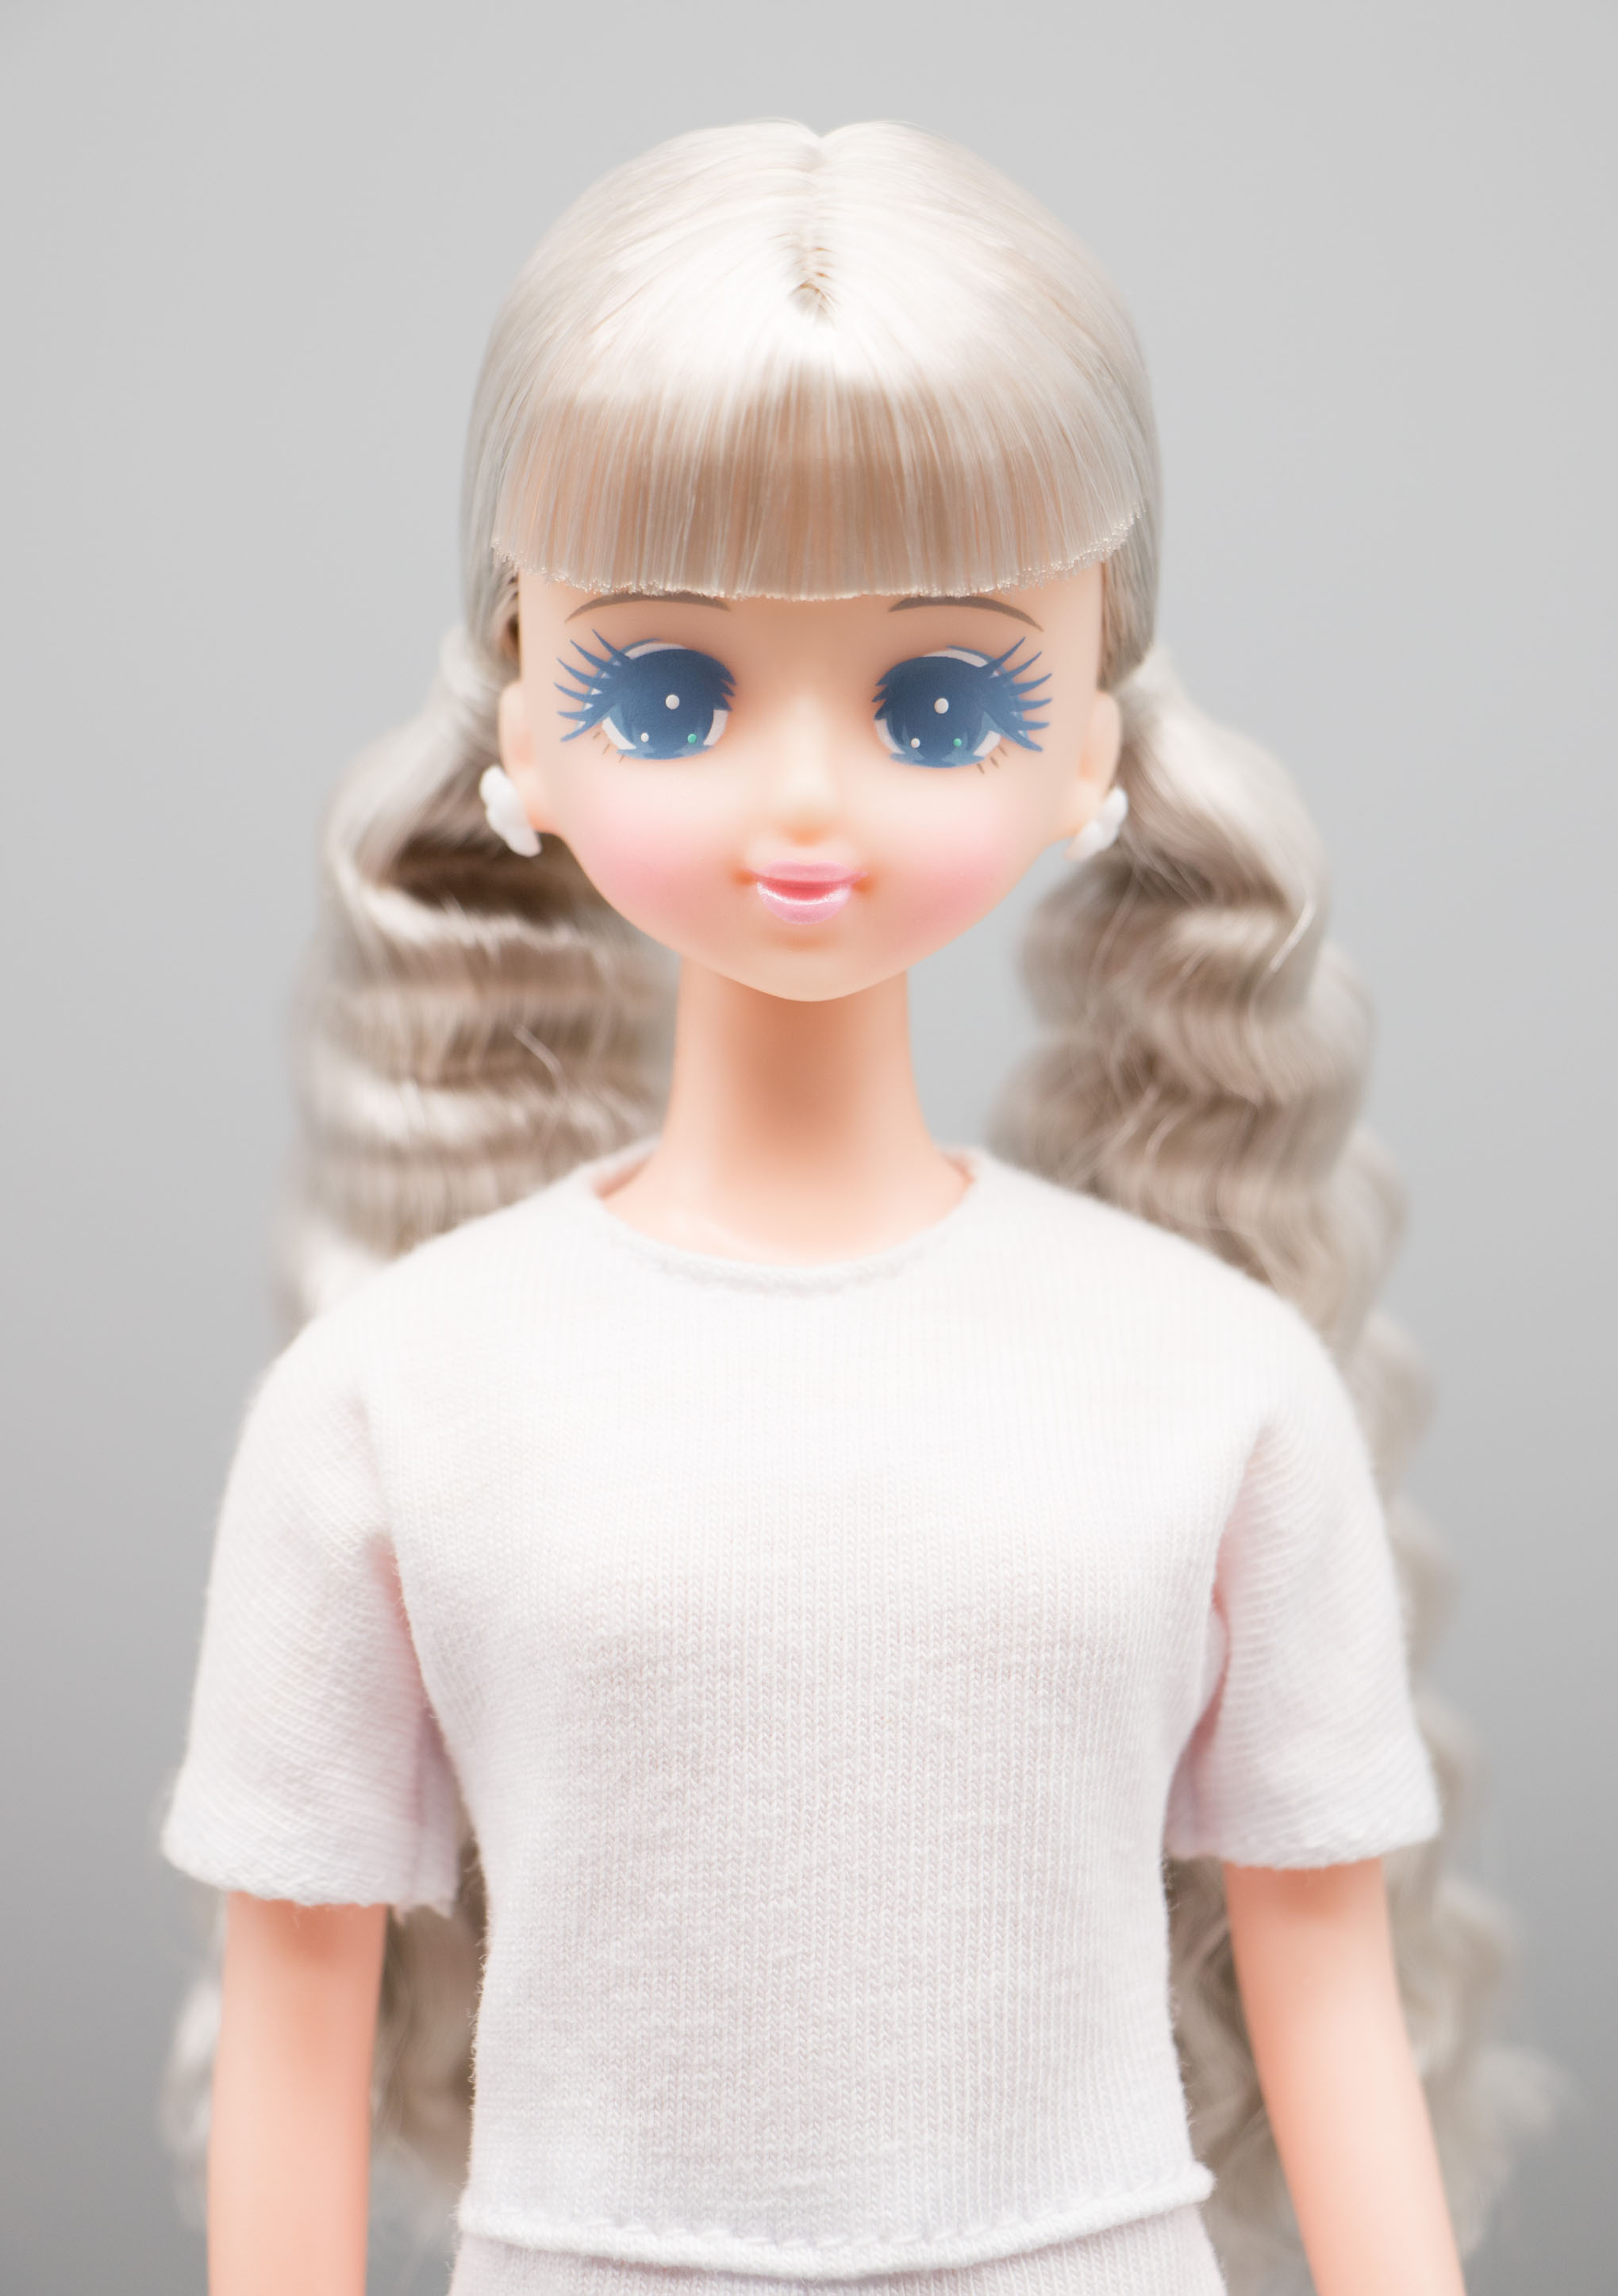 最安値で買 レア リカちゃんキャッスル ジェニー他 プラスチックケース入り オリジナルドール おもちゃ/人形